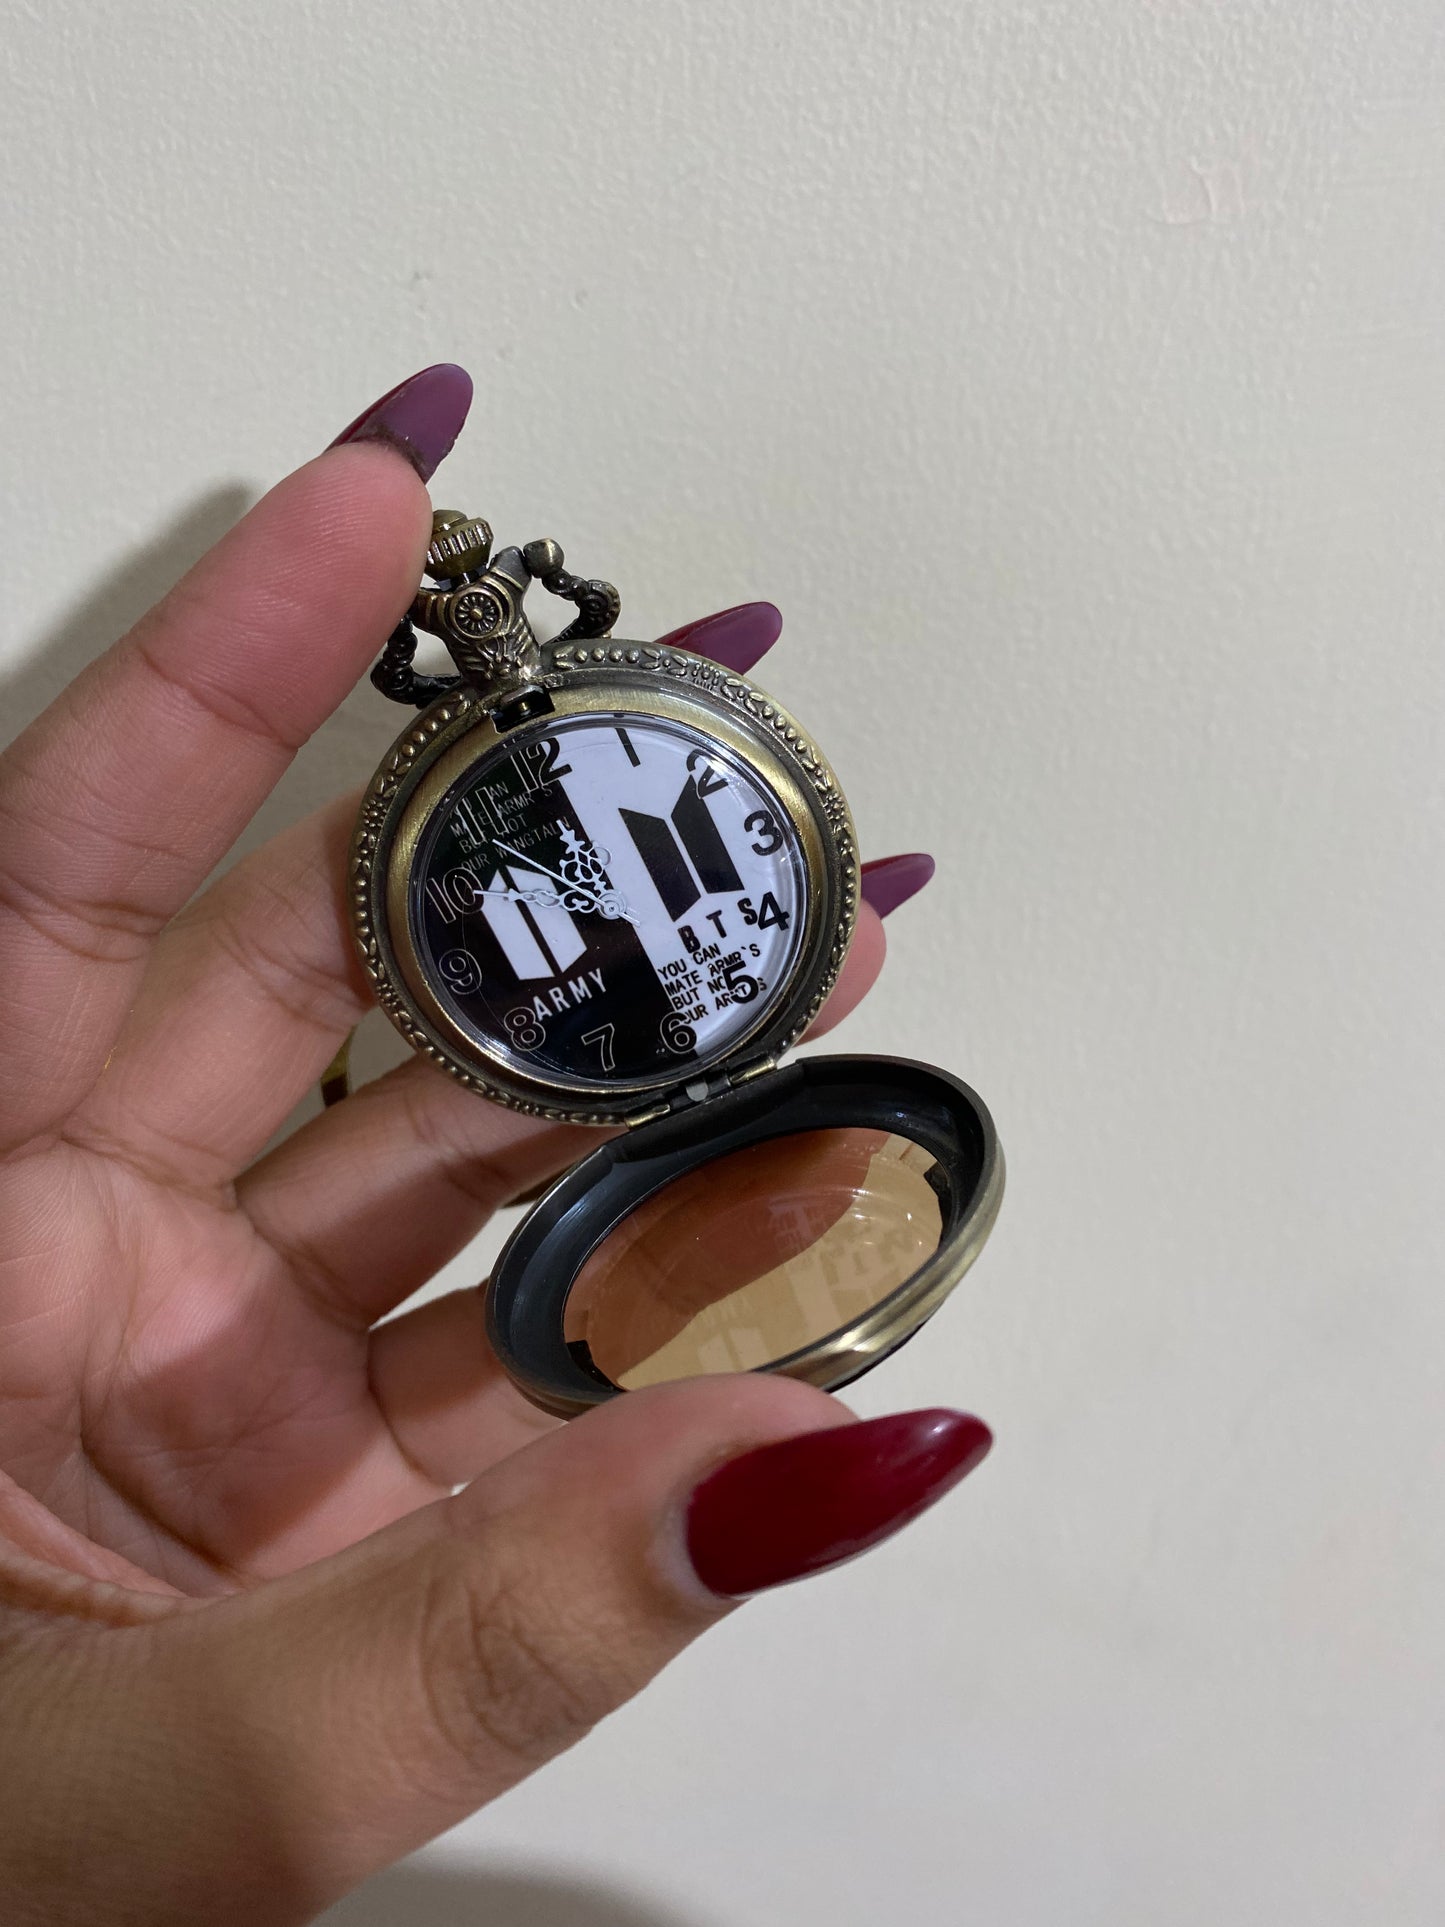 ARMY BTS  antique watch keychain